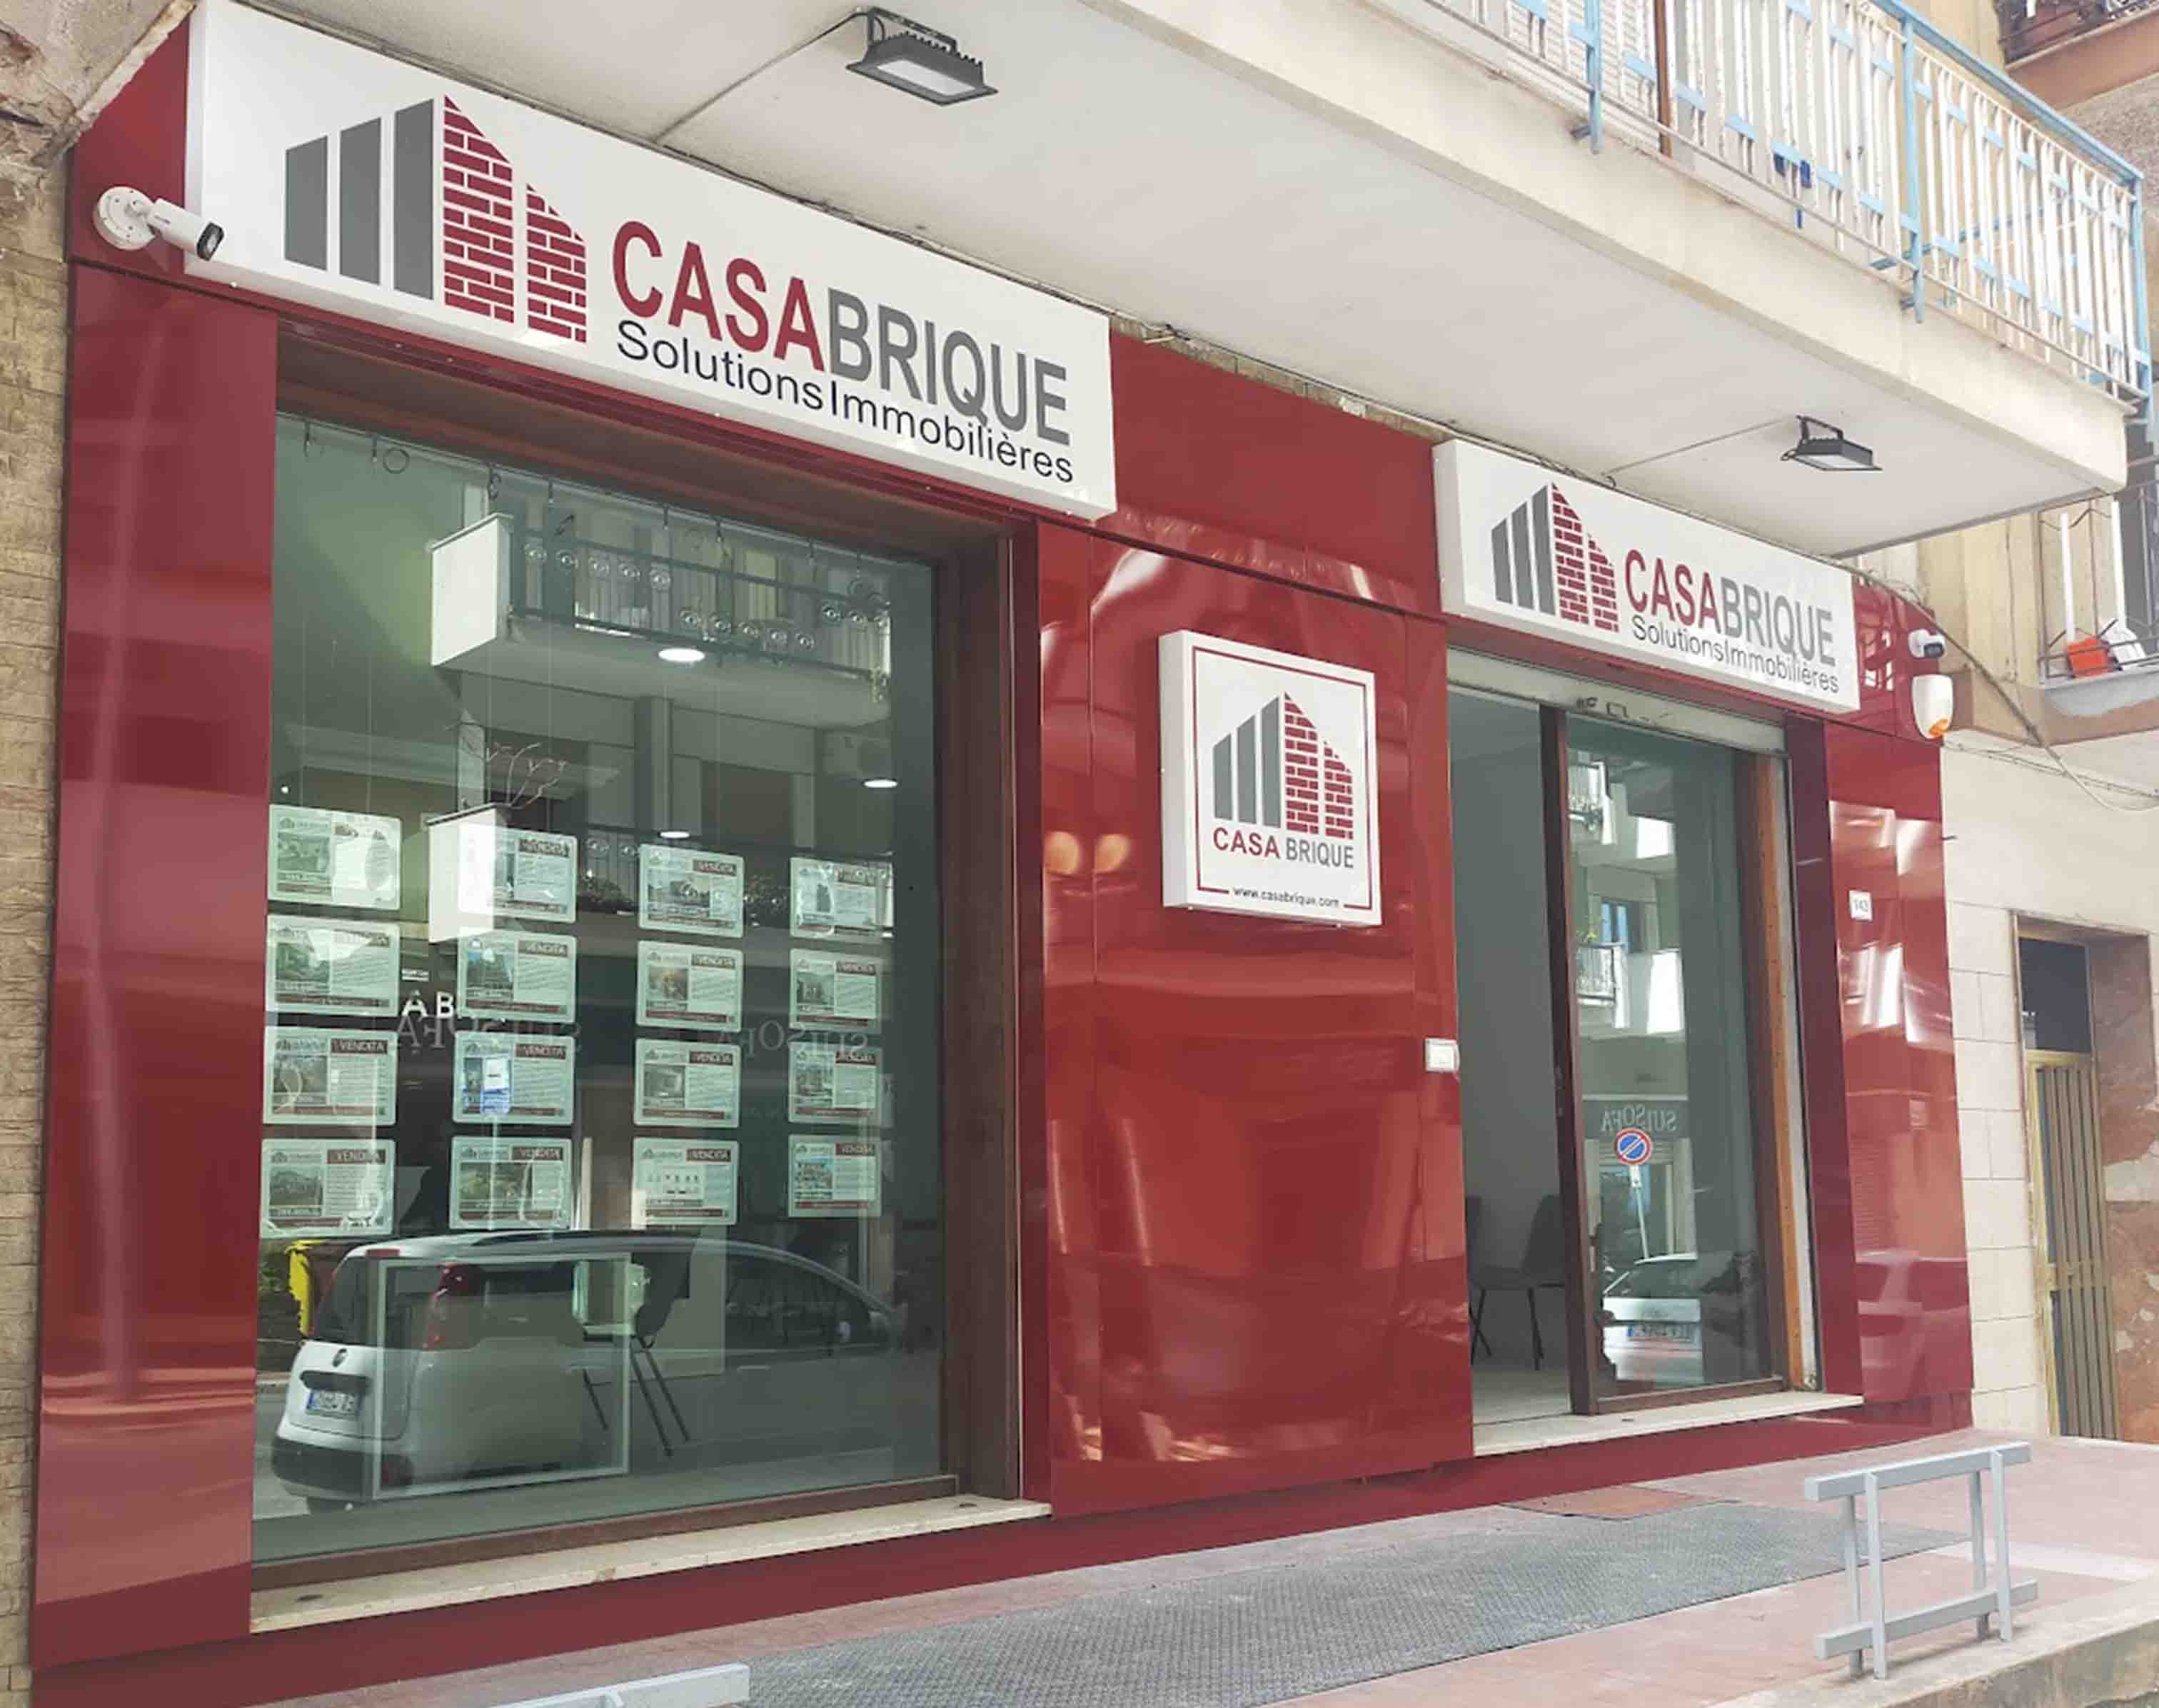 Real Estate Agency Bagheria Casabrique